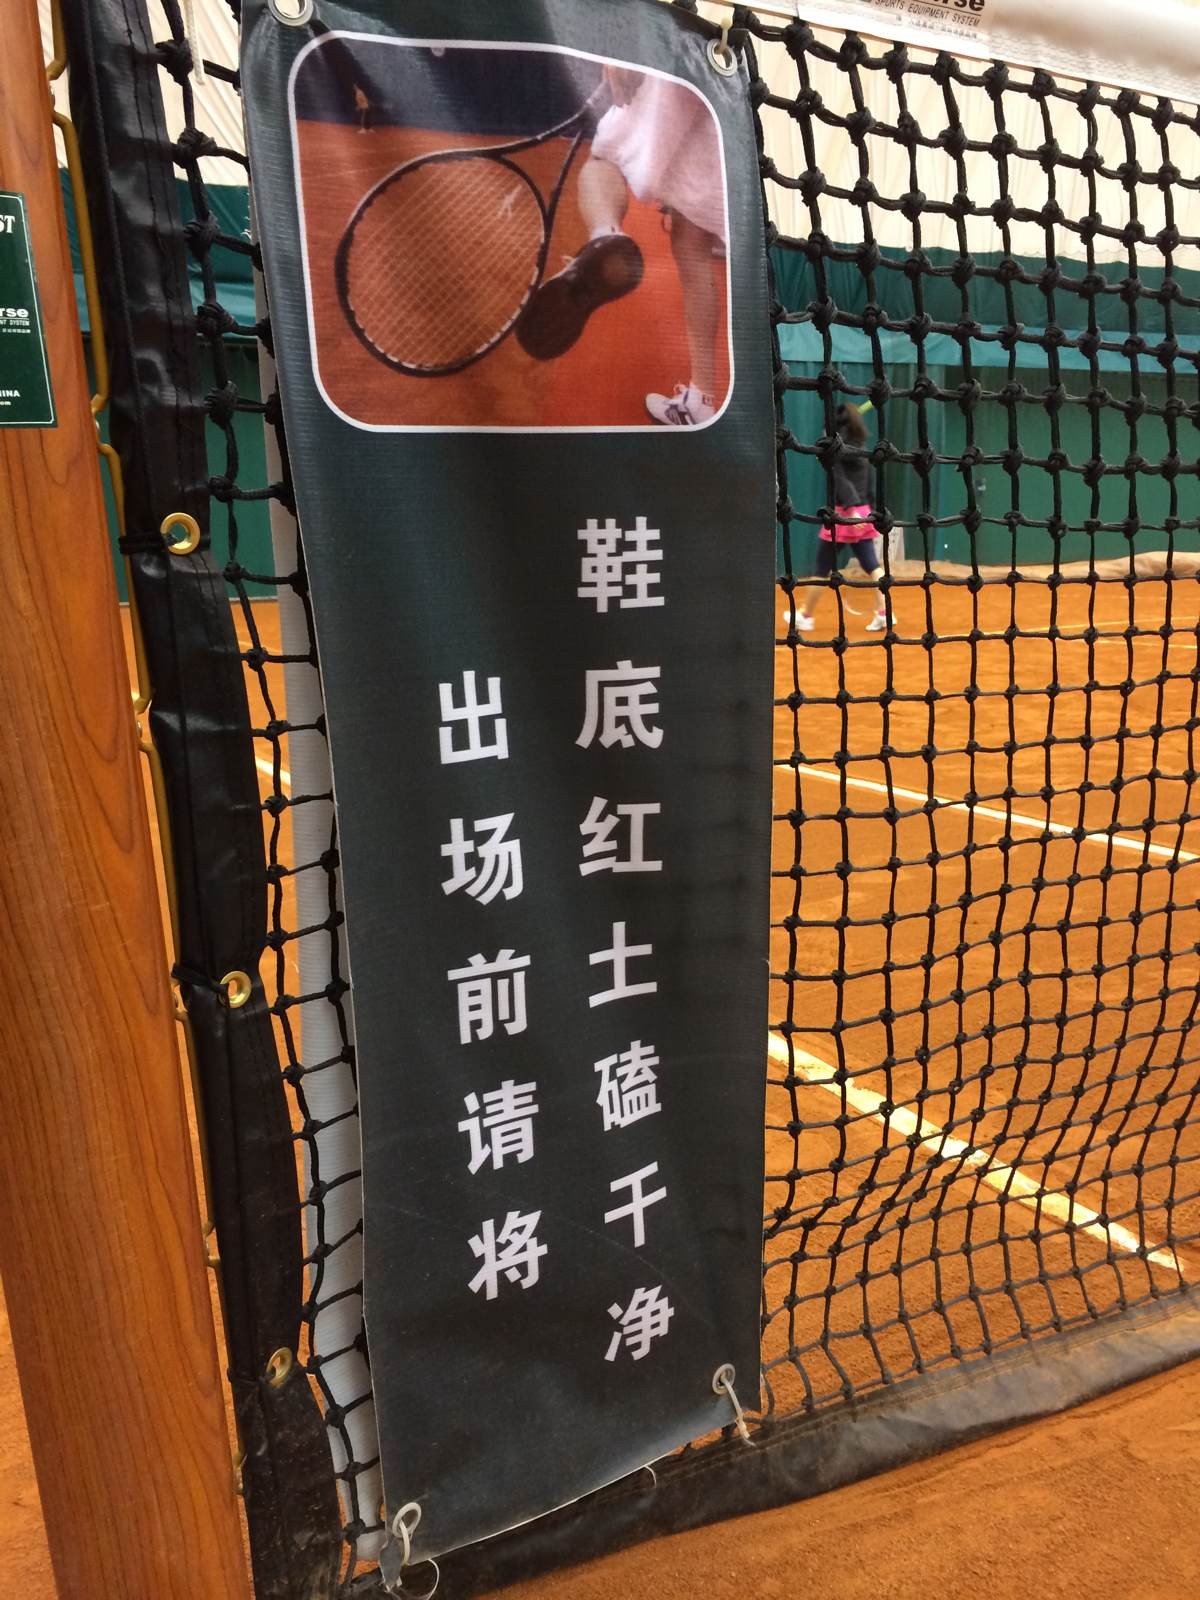 北京国家网球中心红土场地（中网红土）预订